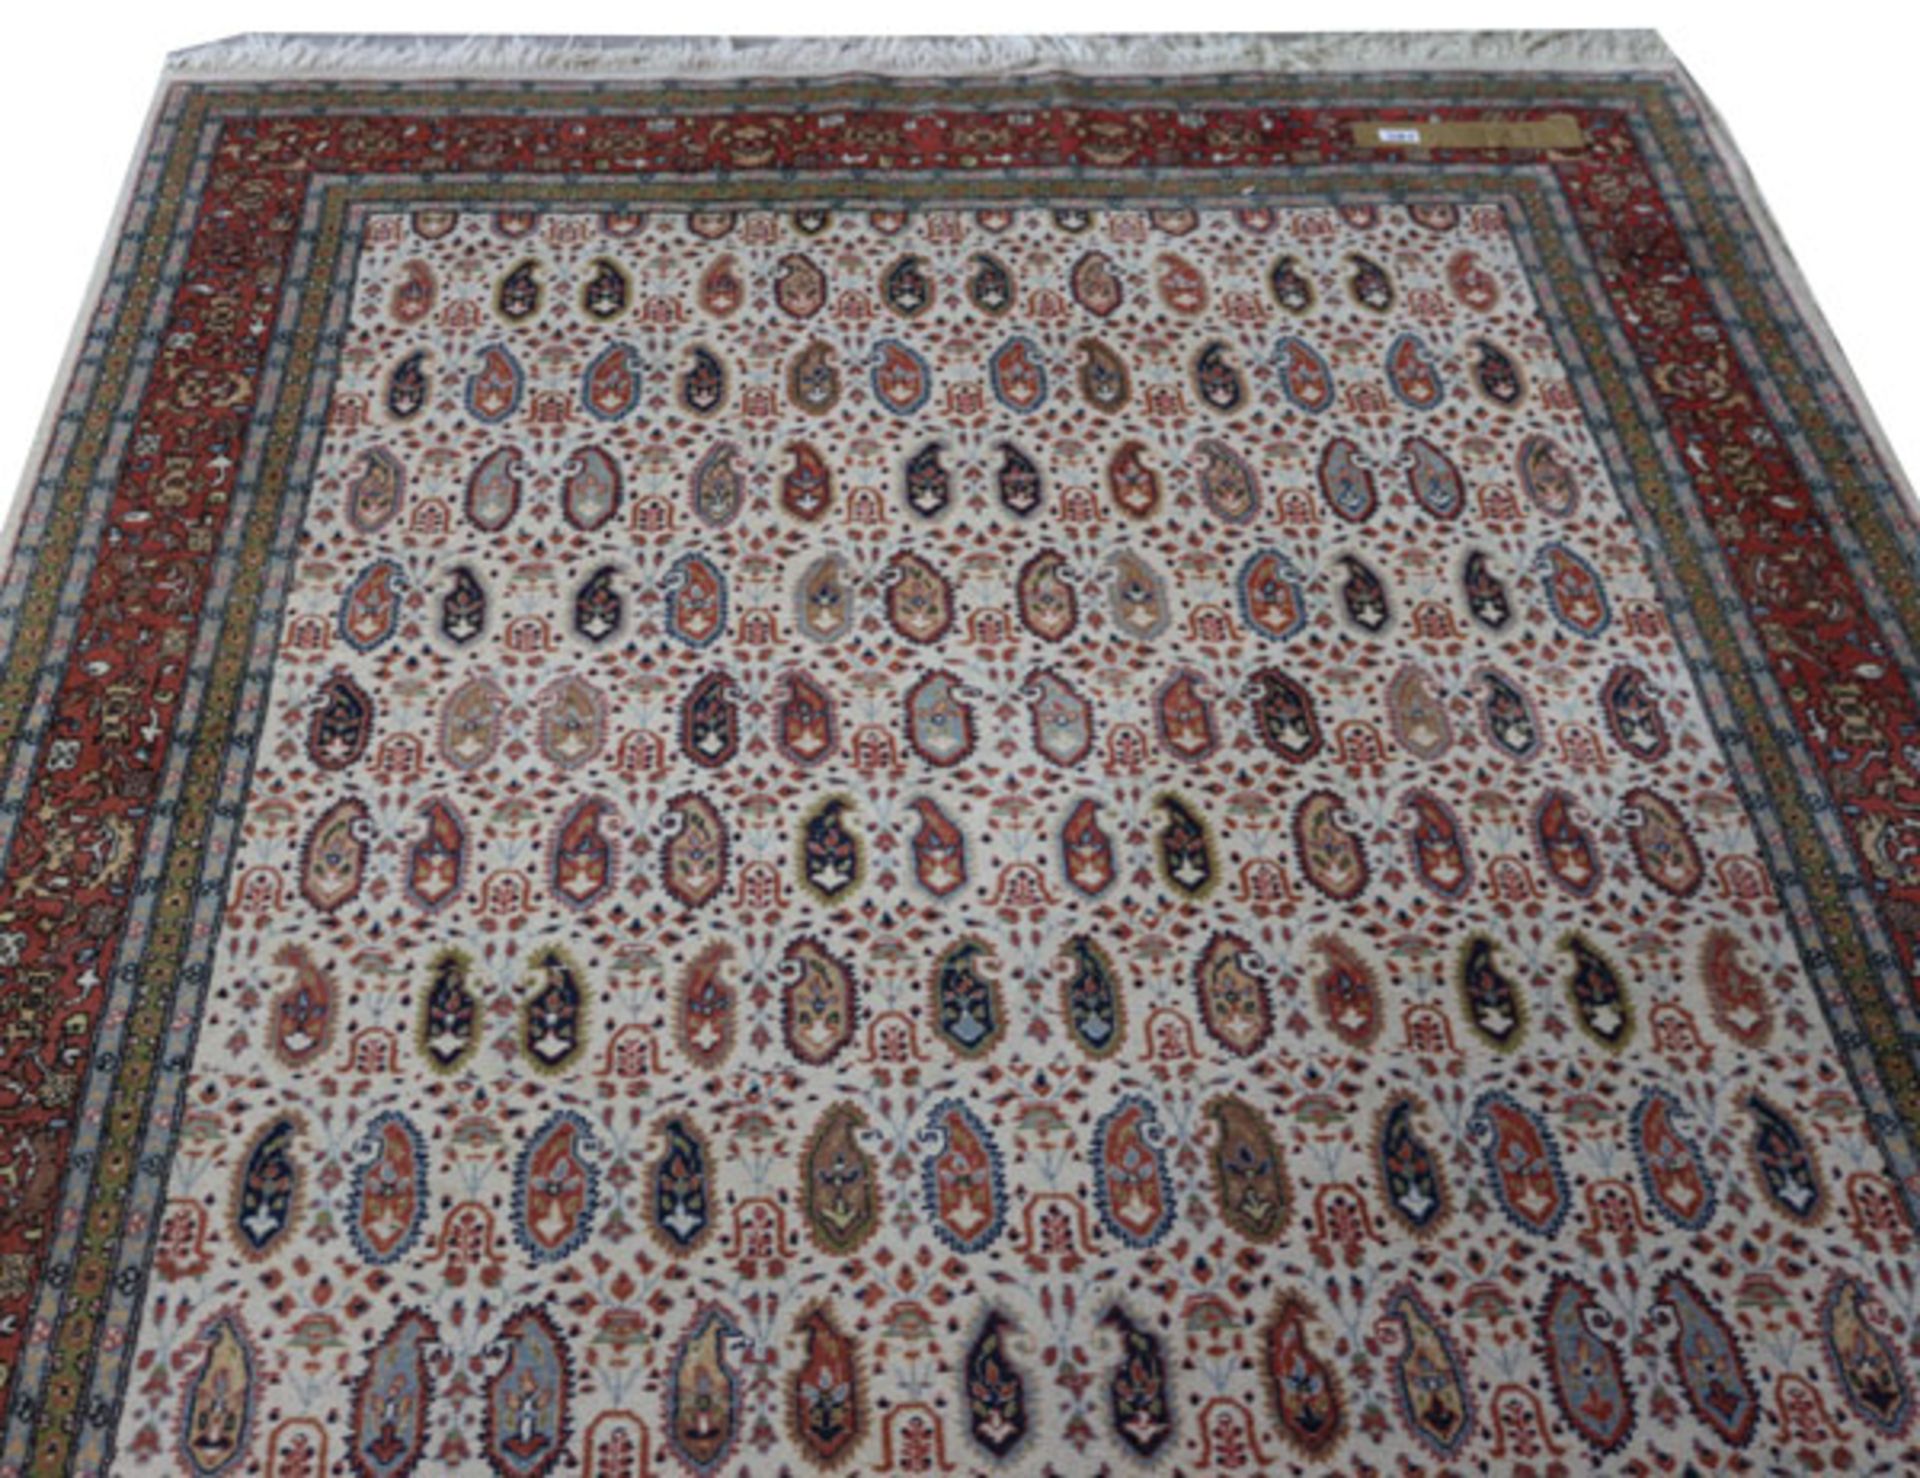 Teppich, beige/bunt, Gebrauchsspuren, teils fleckig, 265 cm x 158 cm